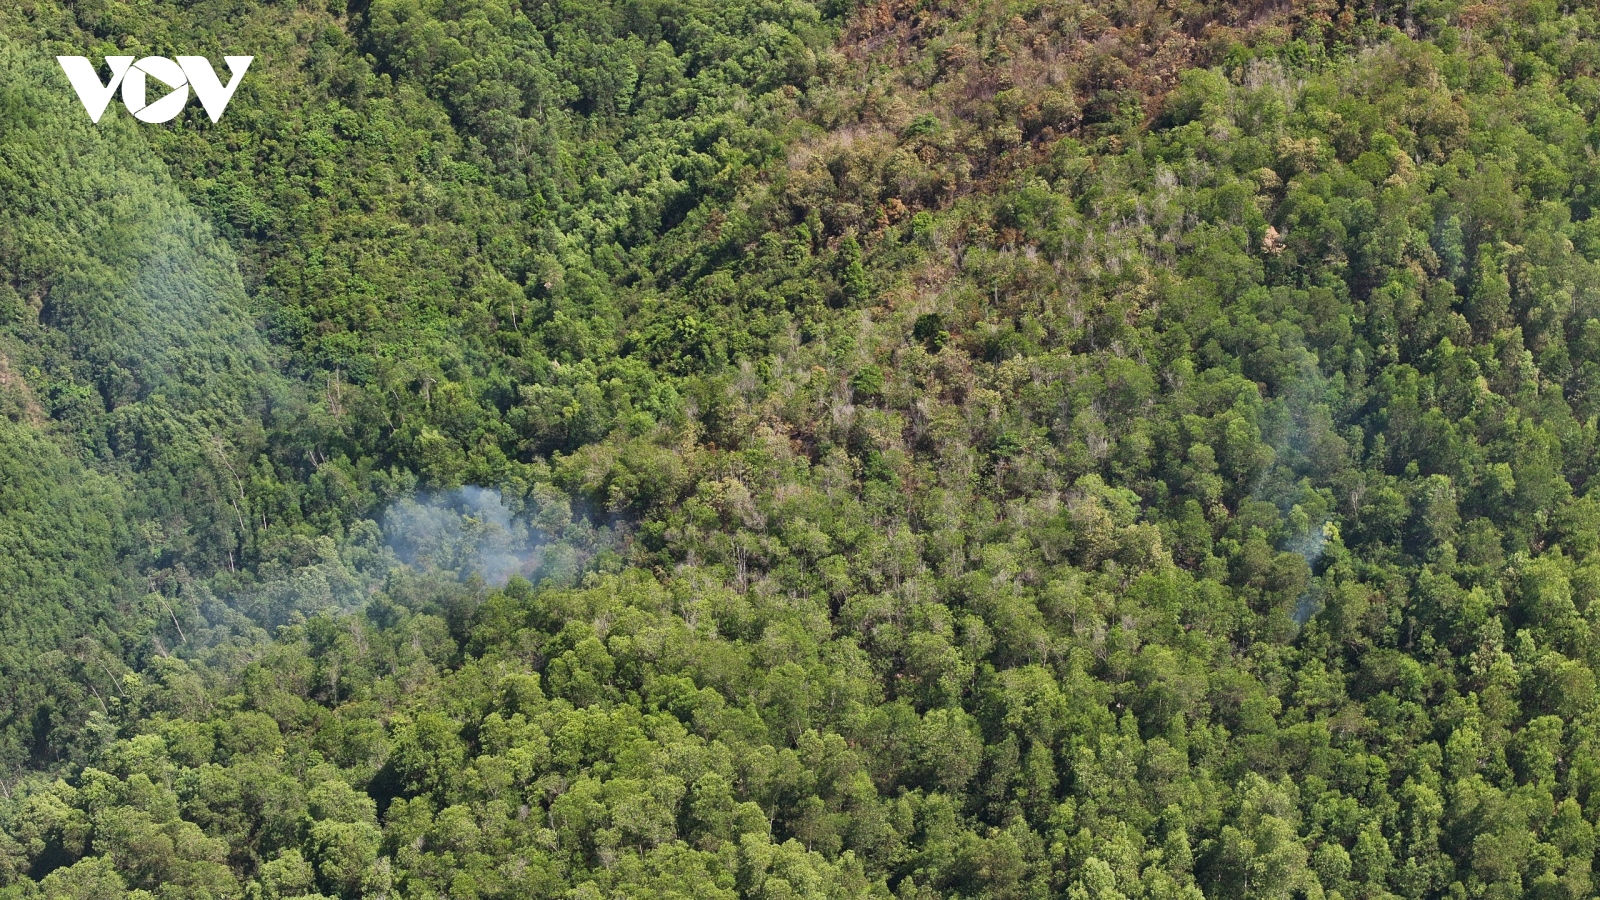 Vụ cháy rừng ở Bình Định gây thiệt hại khoảng 30 ha